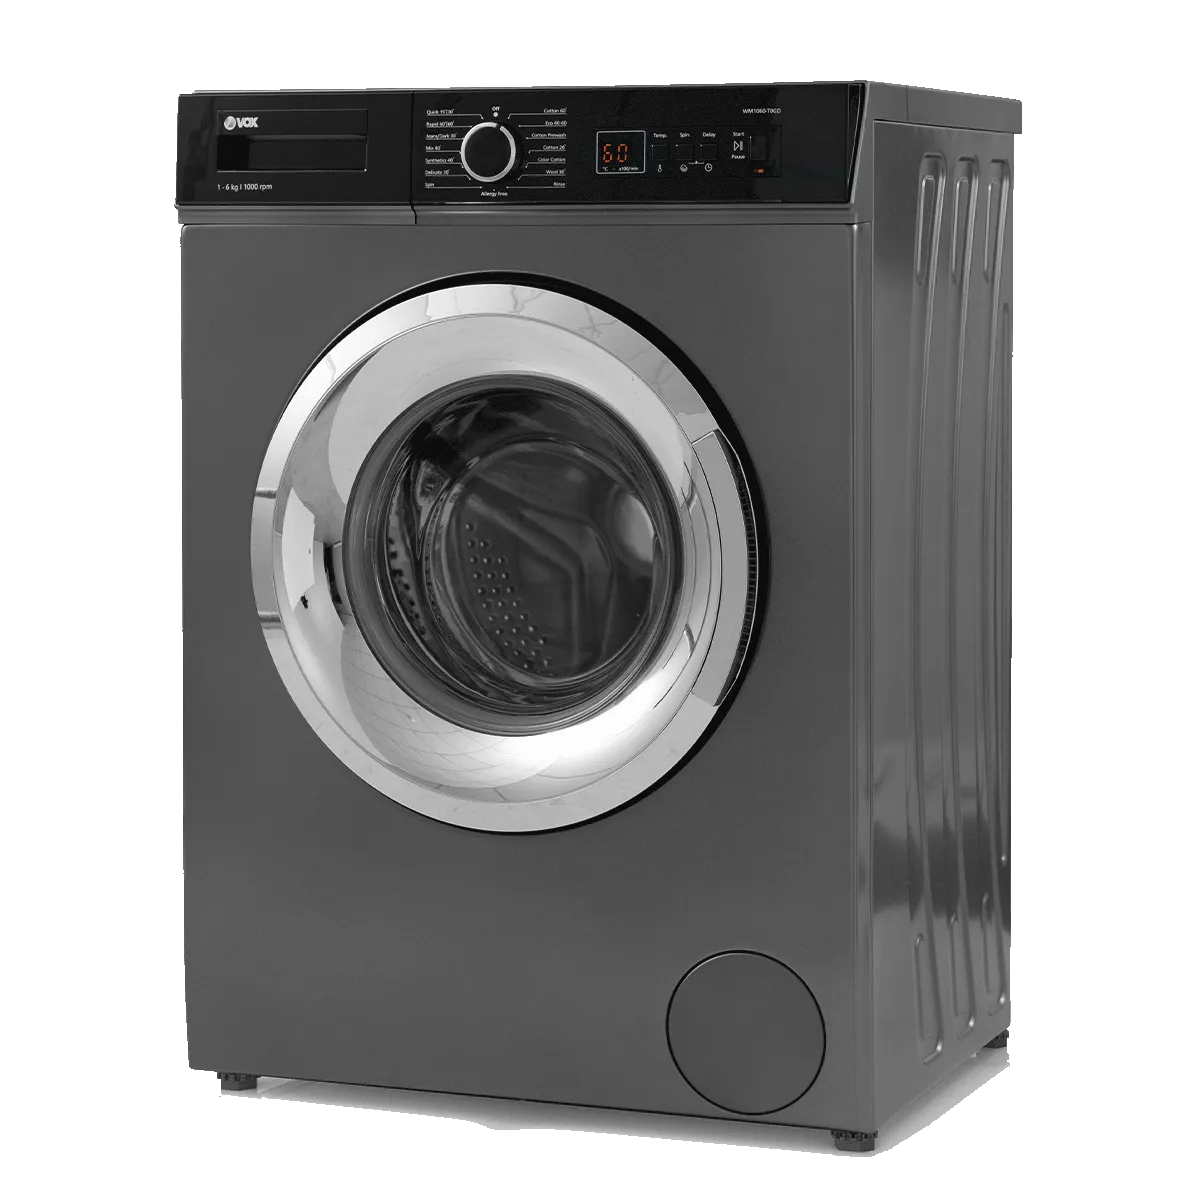 Washing machine WM1060-T0GD 